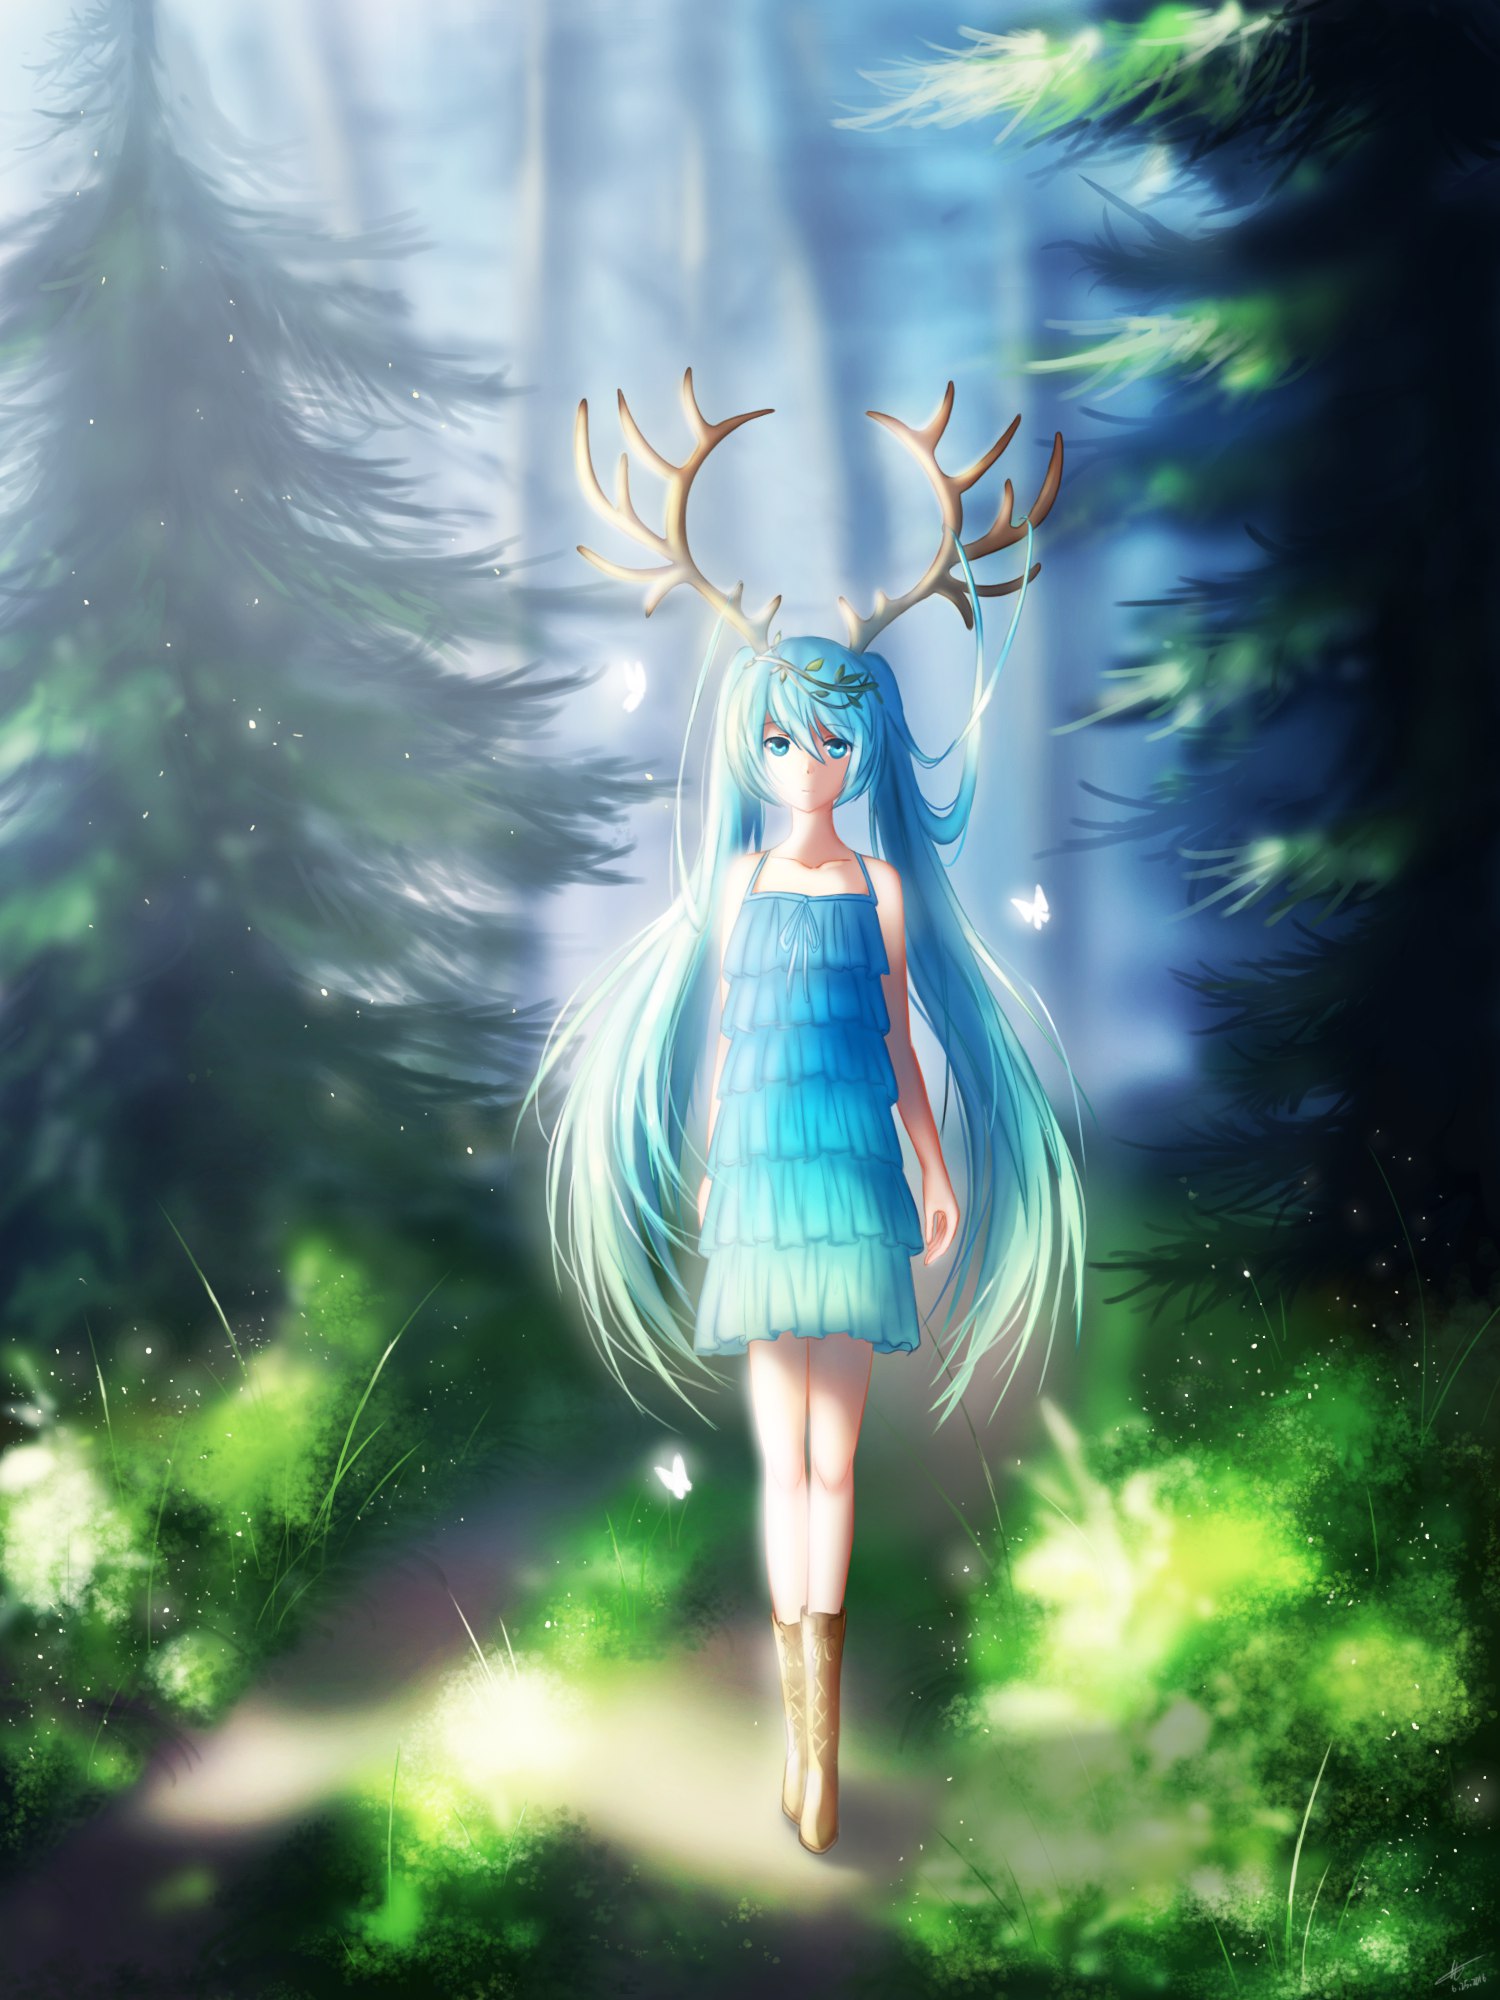 Фото Vocaloid Hatsune Miku / Вокалоид Хацунэ Мику в голубом платьице, с оленьими рогами на голове, идет по тропинке в лесу, вокруг нее порхают светящиеся белые бабочки